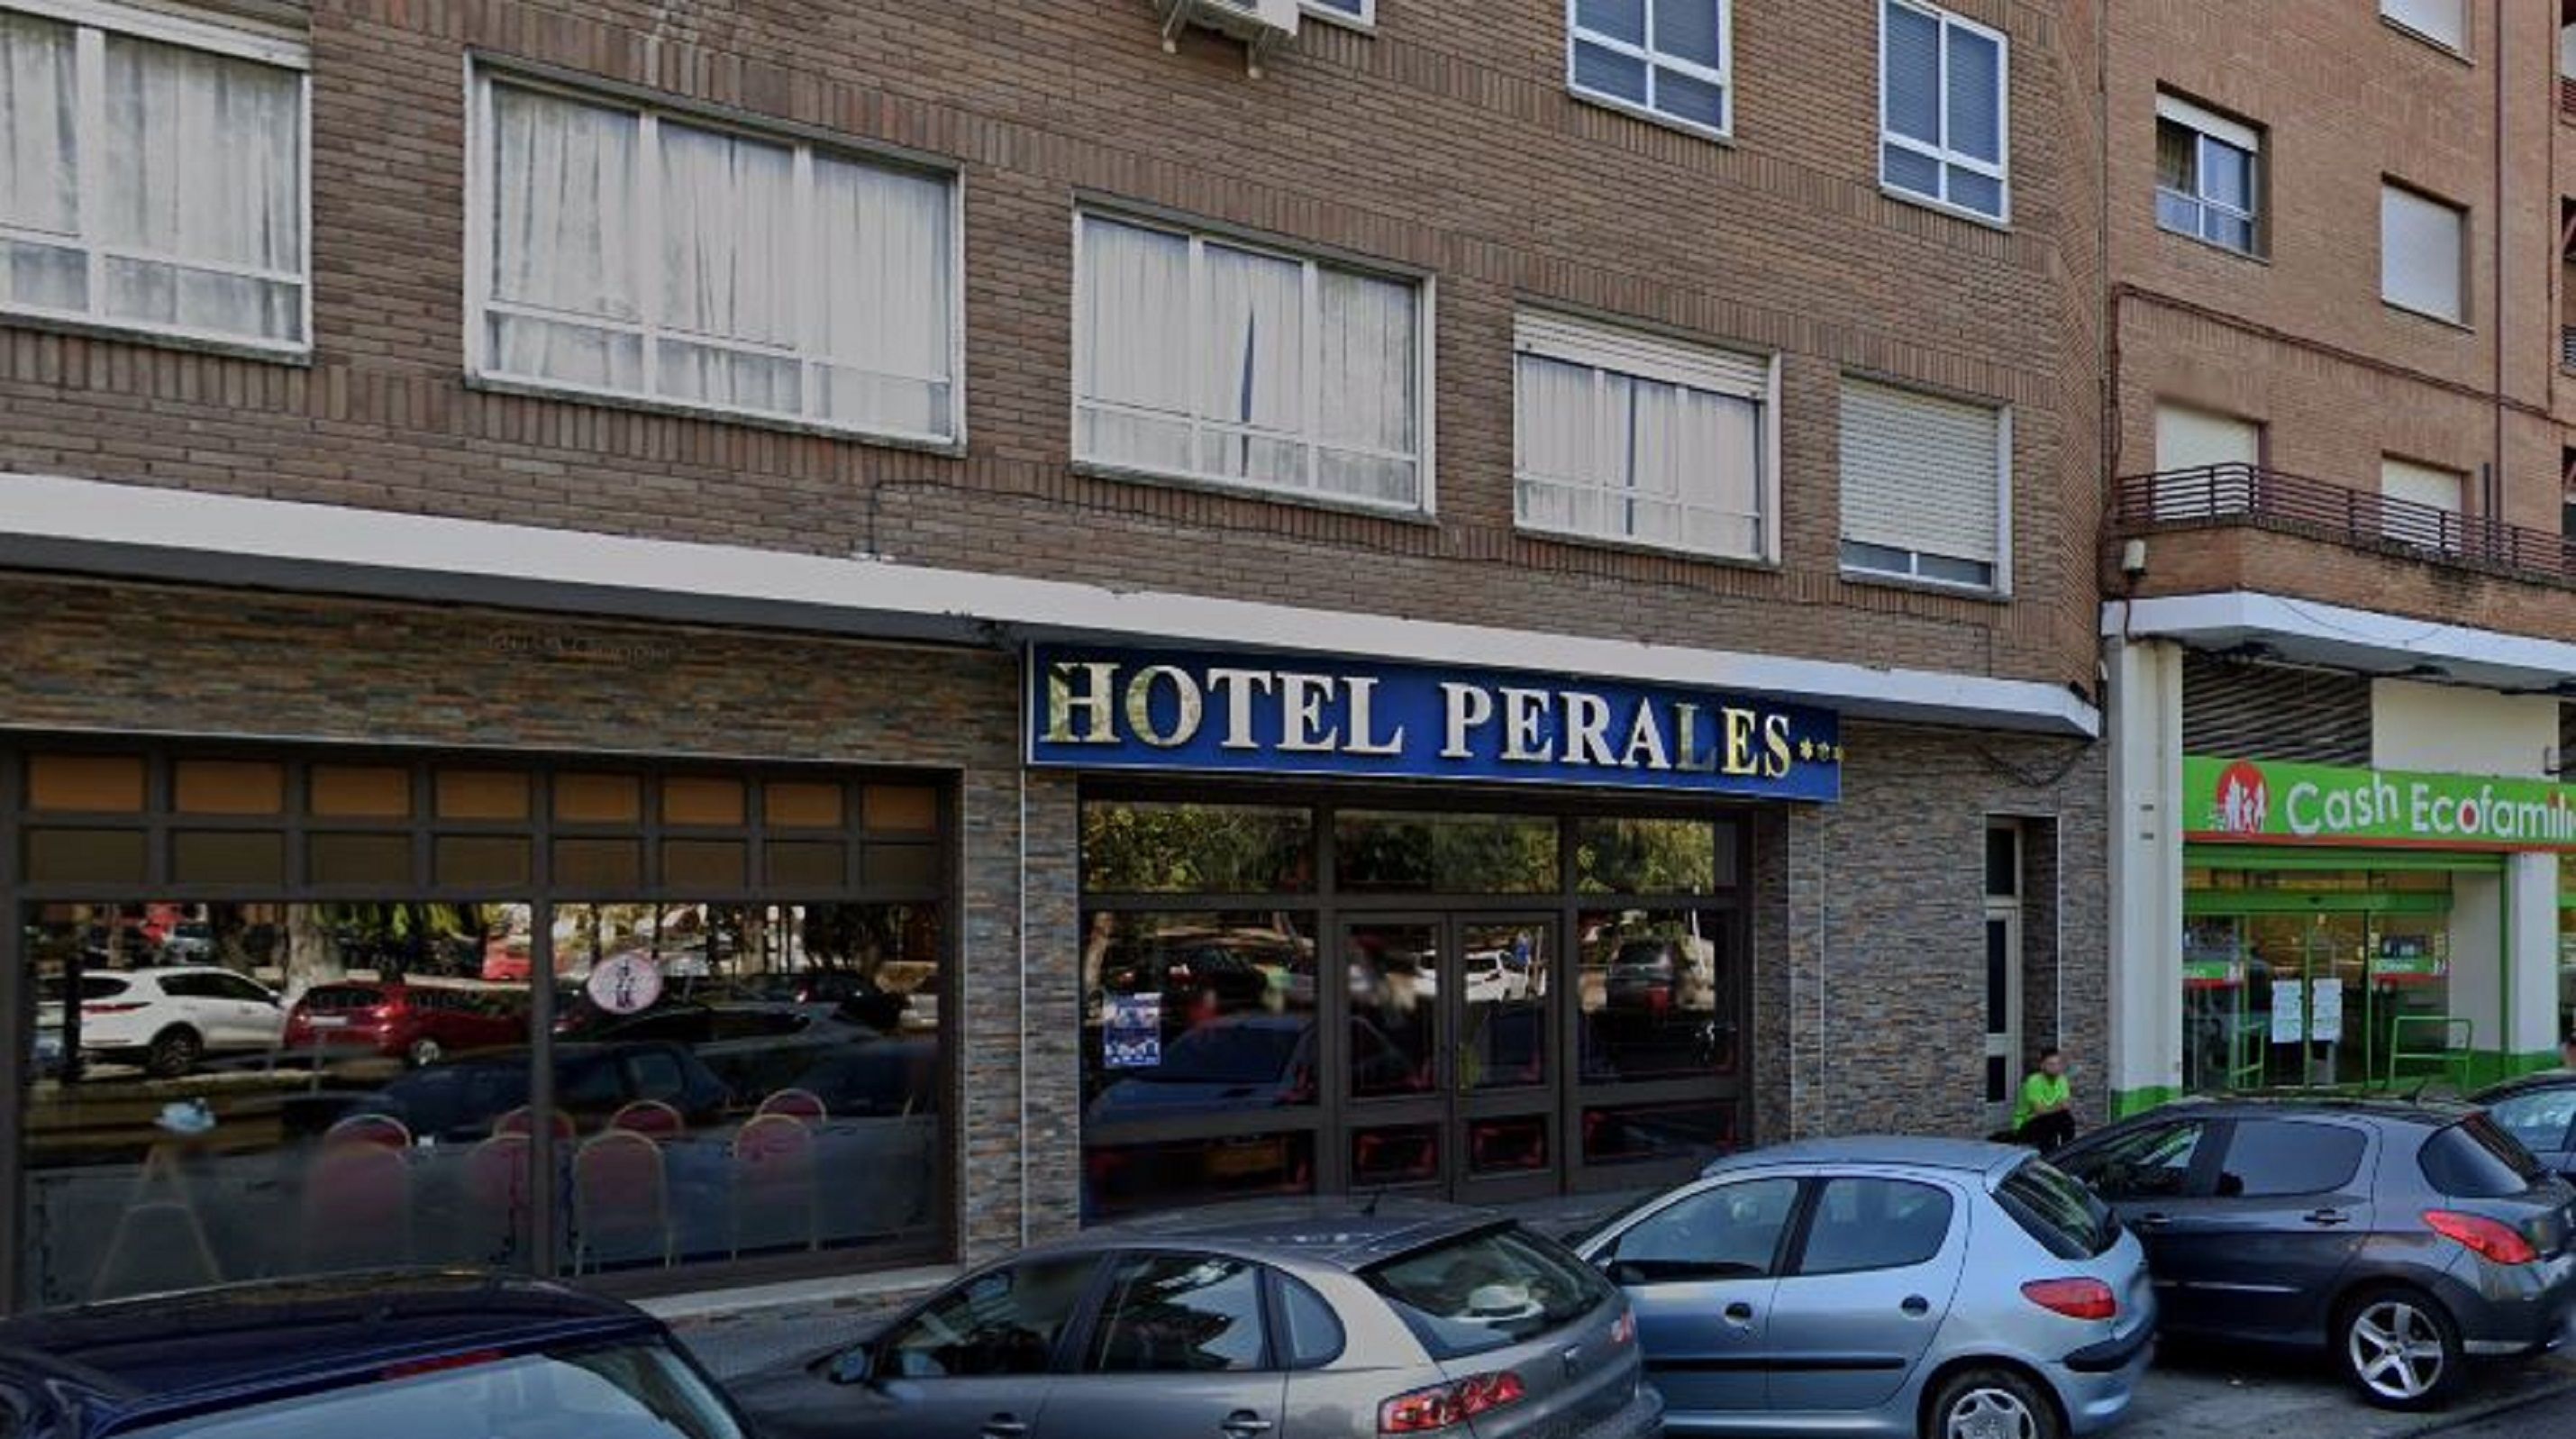 Hotel Pereres Talavera de la Reina / Google Maps